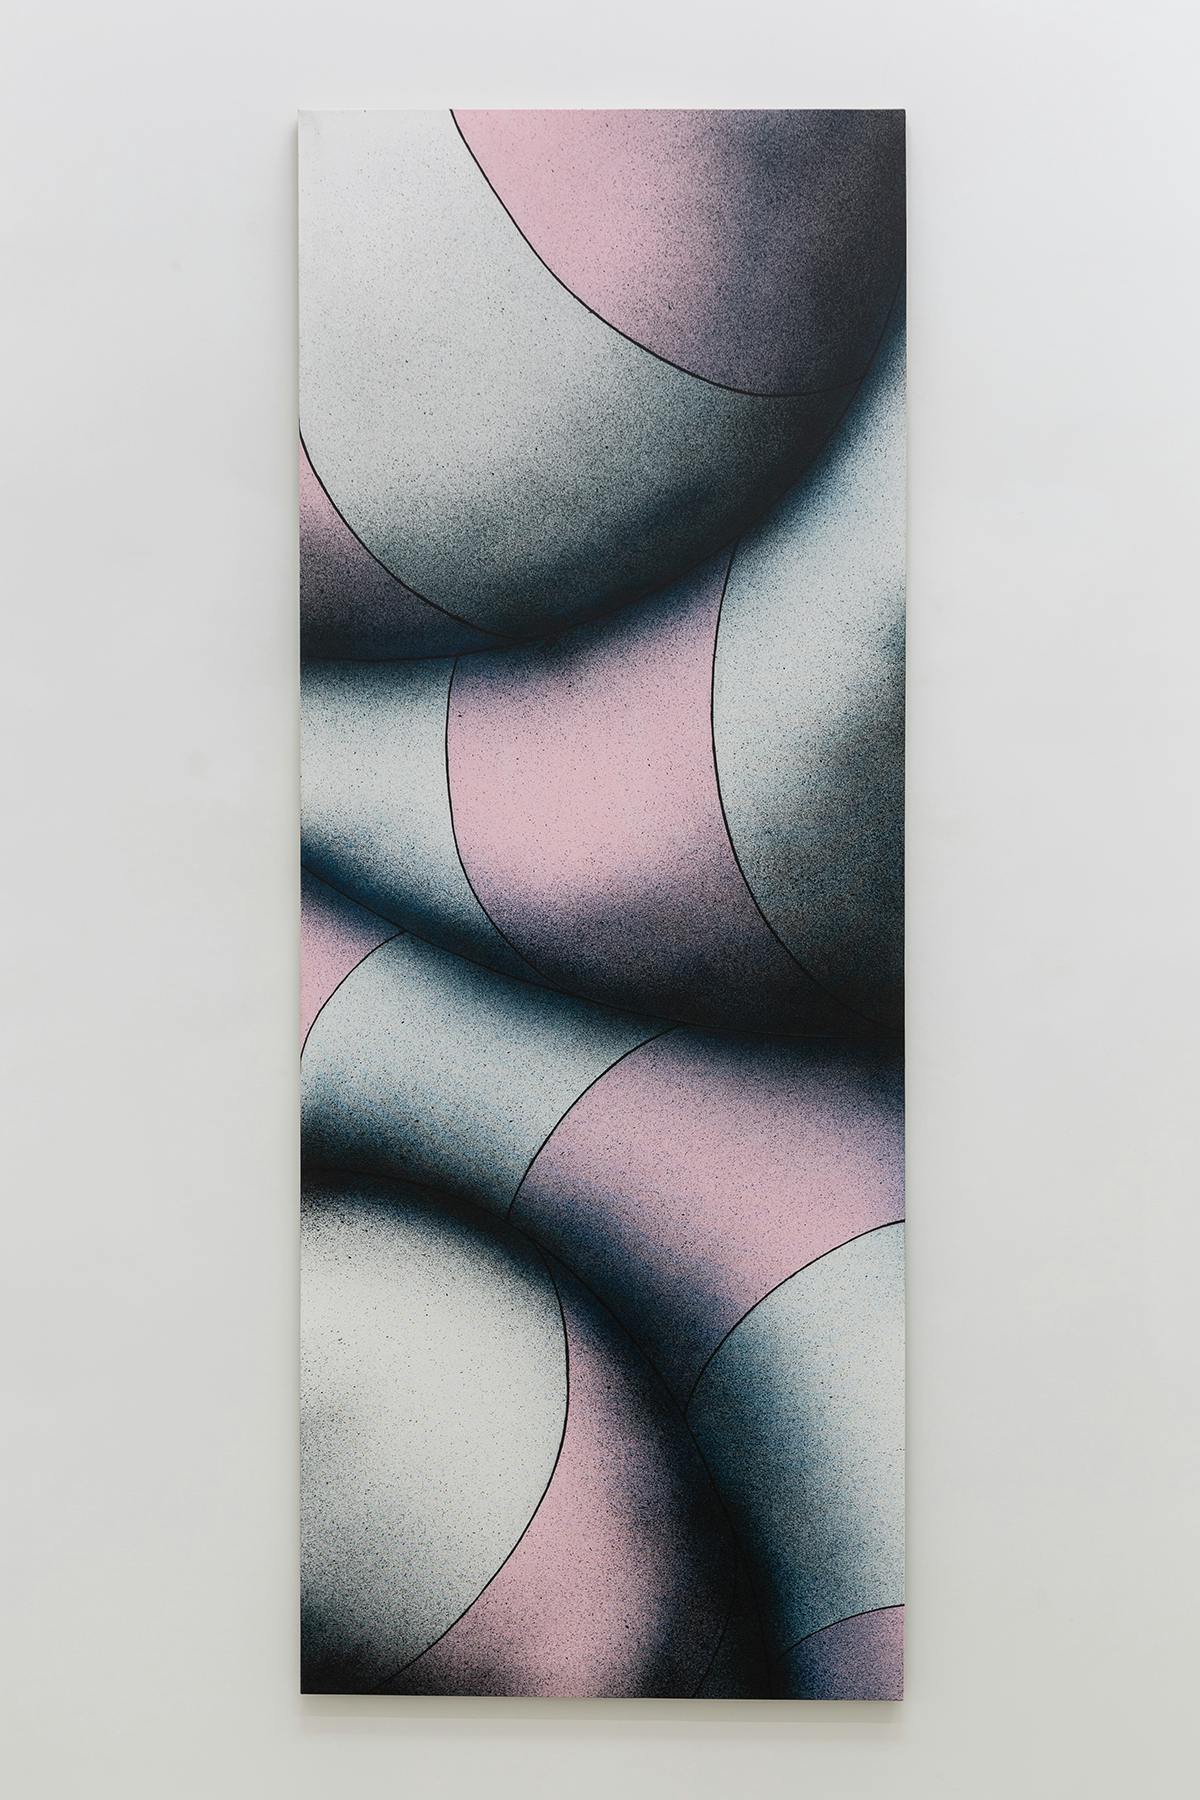 Senza titolo, 2014, acrilico su tela, 210 x 80 cm